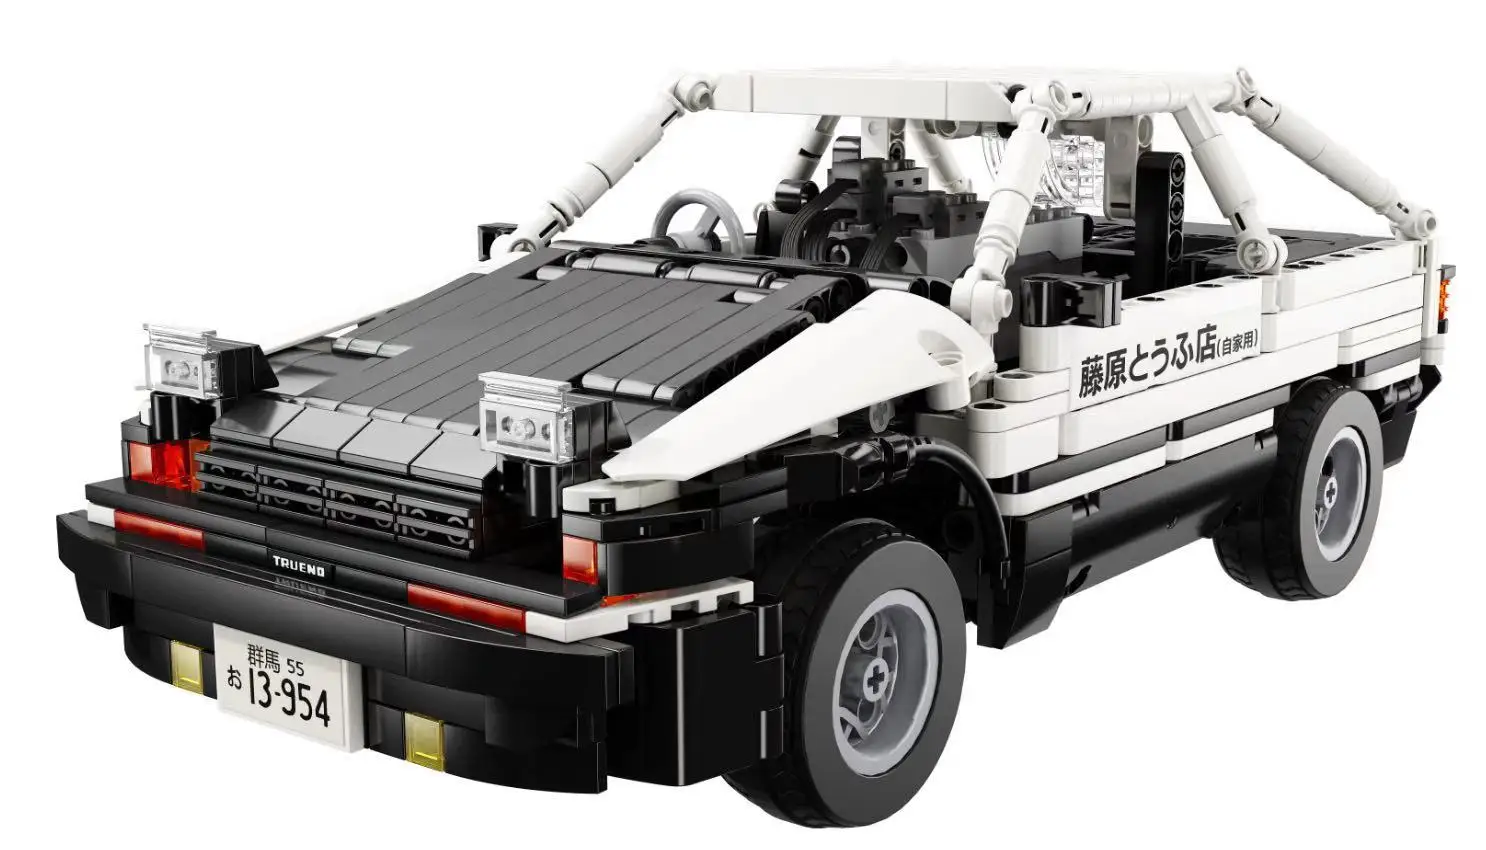 MOC RC Функция питания Toyota AE86 моторная техника наборы строительных блоков Кирпичи diy игрушка подарок